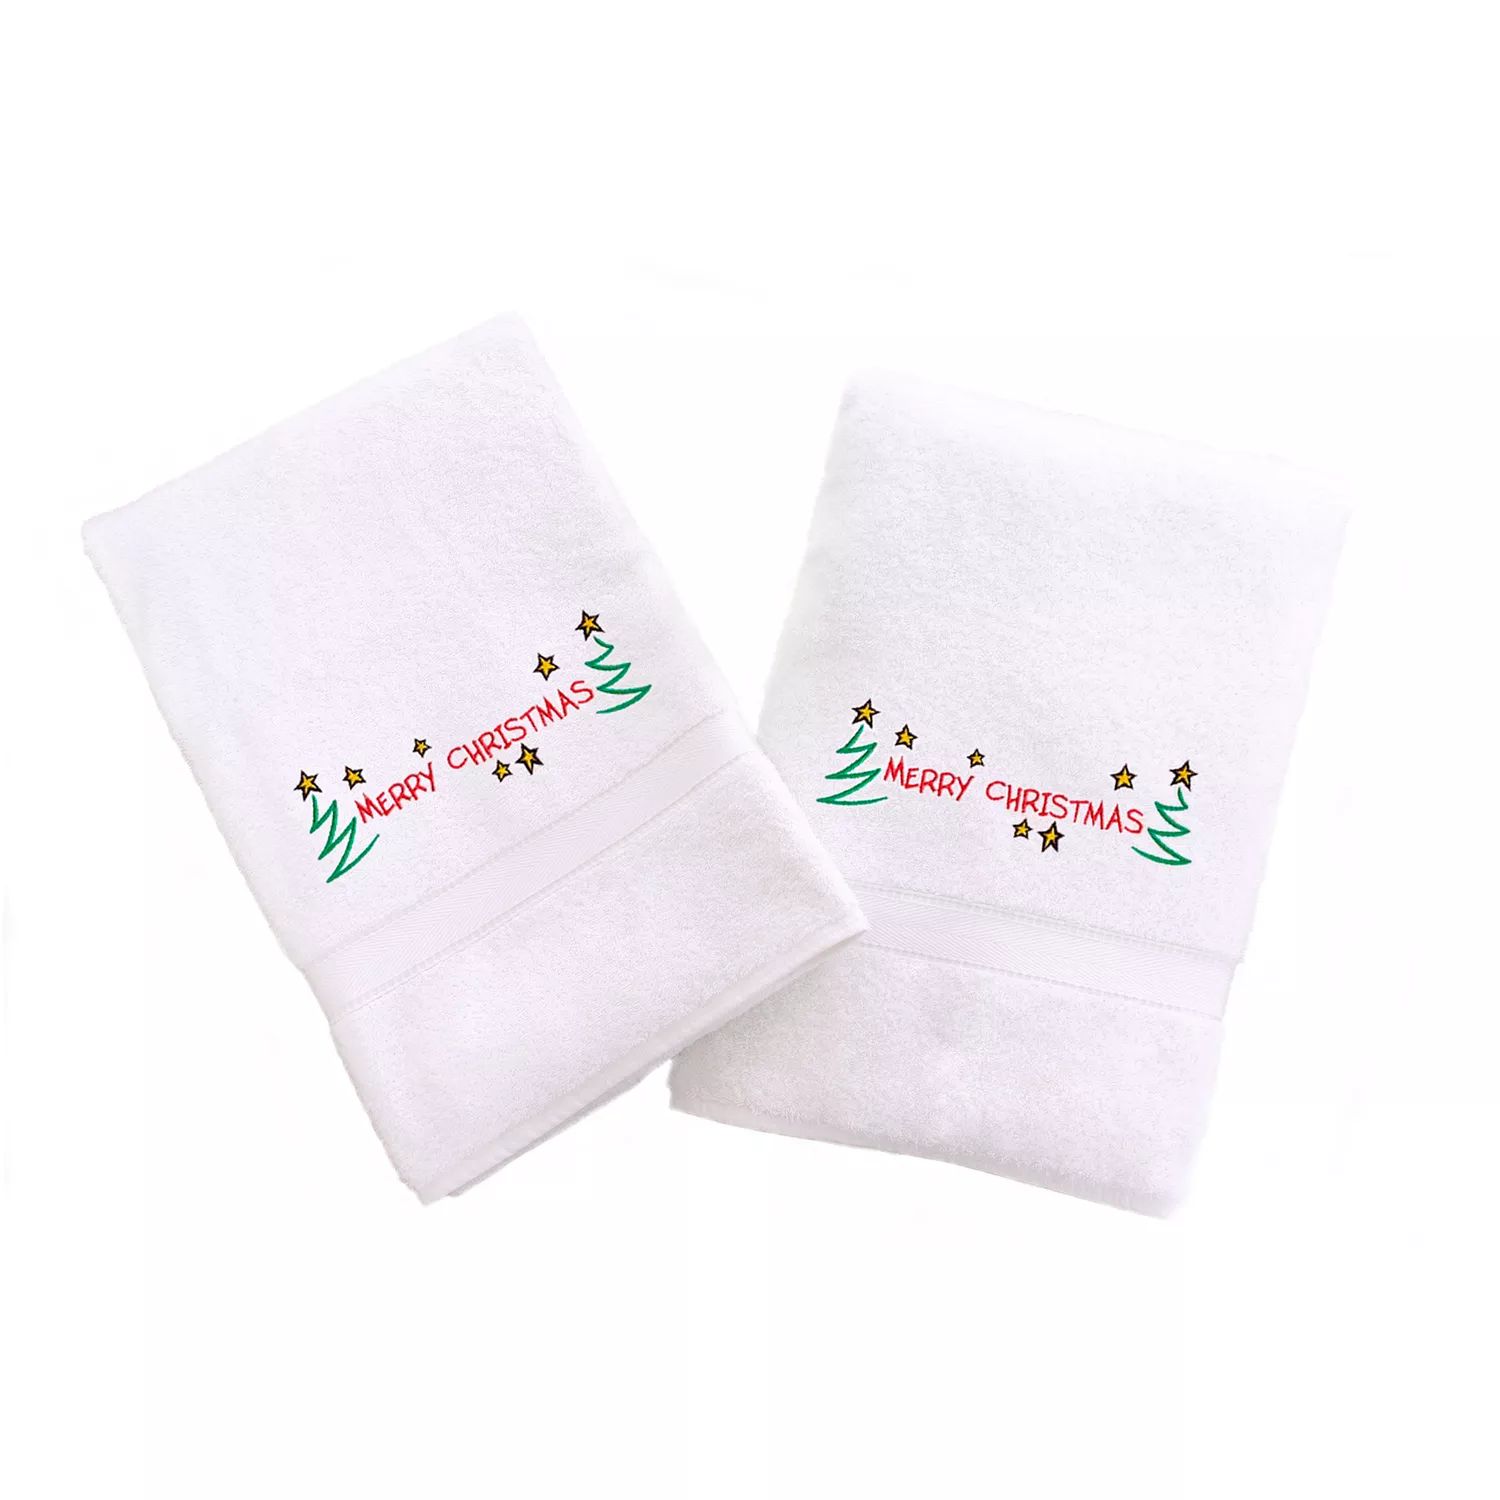 Linum Home Textiles Праздничные полотенца для рук с вышивкой бордюром, 2 упаковки merry christmas geronimo